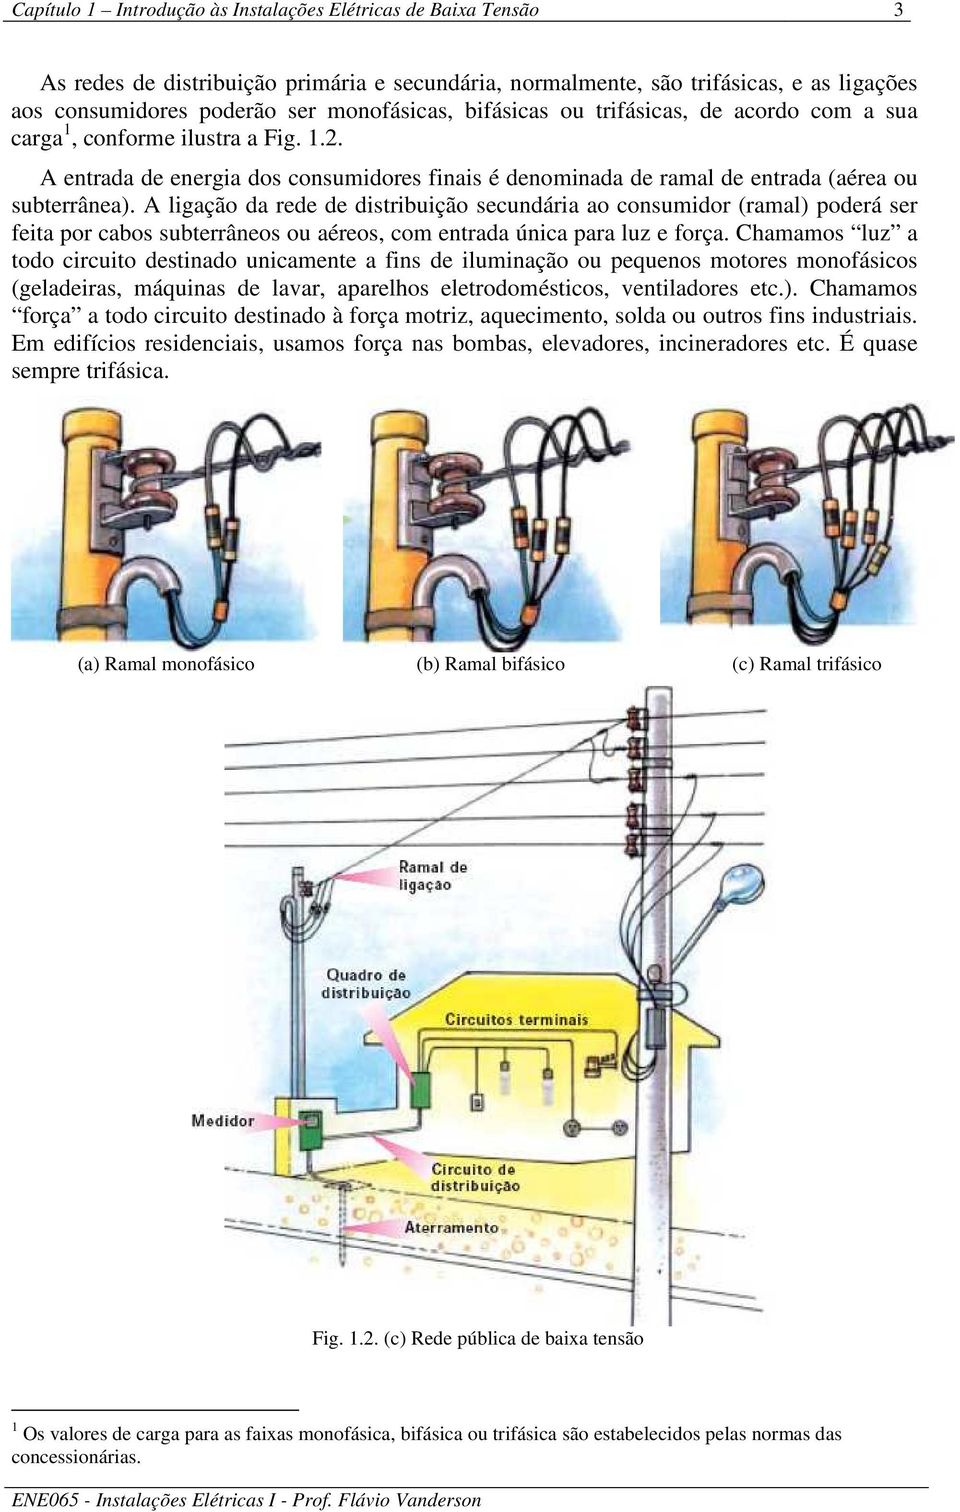 A ligação da rede de distribuição secundária ao consumidor (ramal) poderá ser feita por cabos subterrâneos ou aéreos, com entrada única para luz e força.